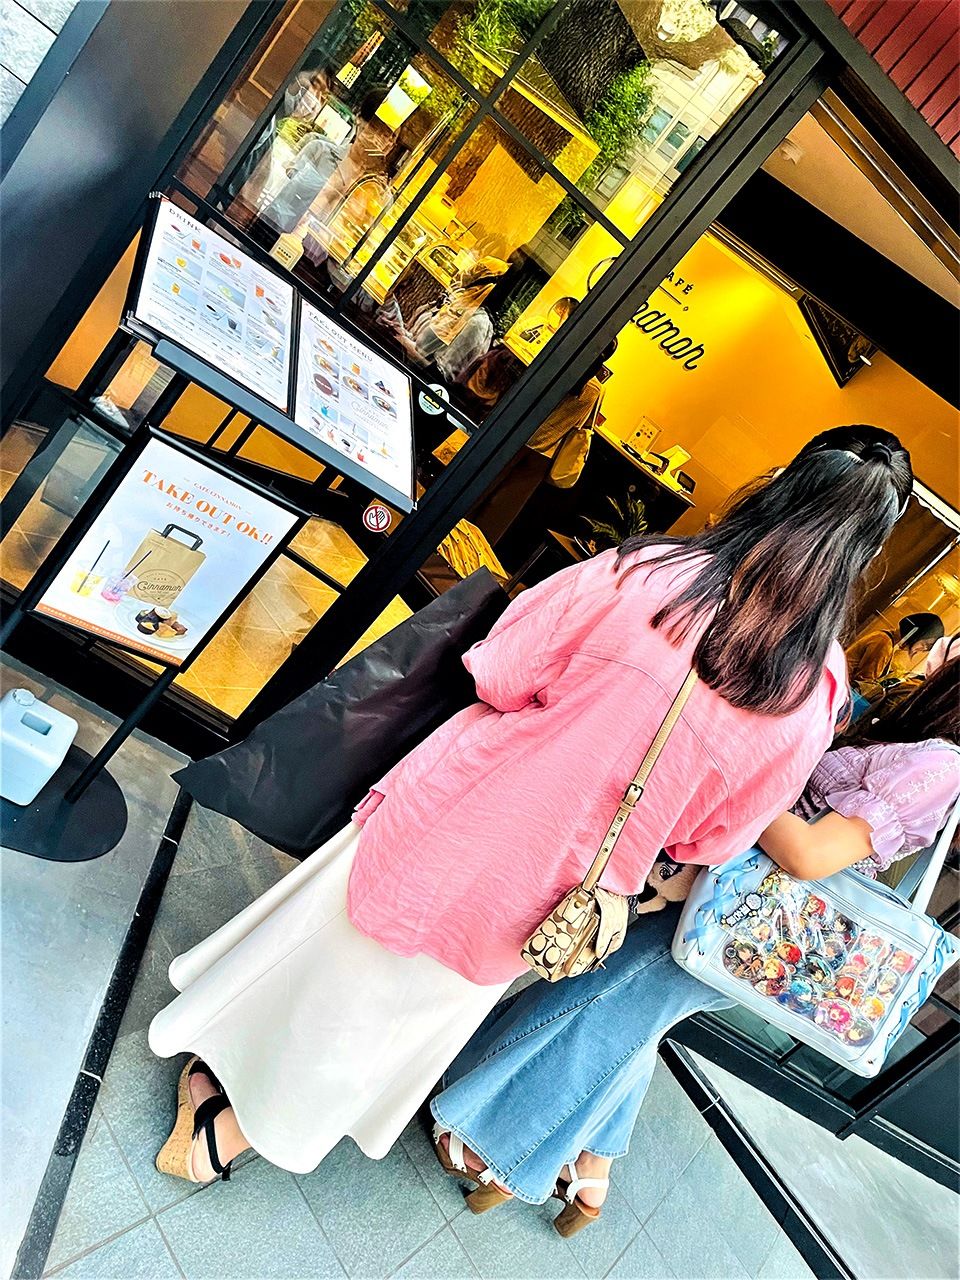  مقهى سينامون يبدو مثل أي مقهى عصري آخر، ولكن زبائنه في الغالب من الأوتاكو الإناث، كما يظهر على النساء اللائي يحملن ”حقائب-إيتا“ عند مدخله. (© هانيؤكا يوري)